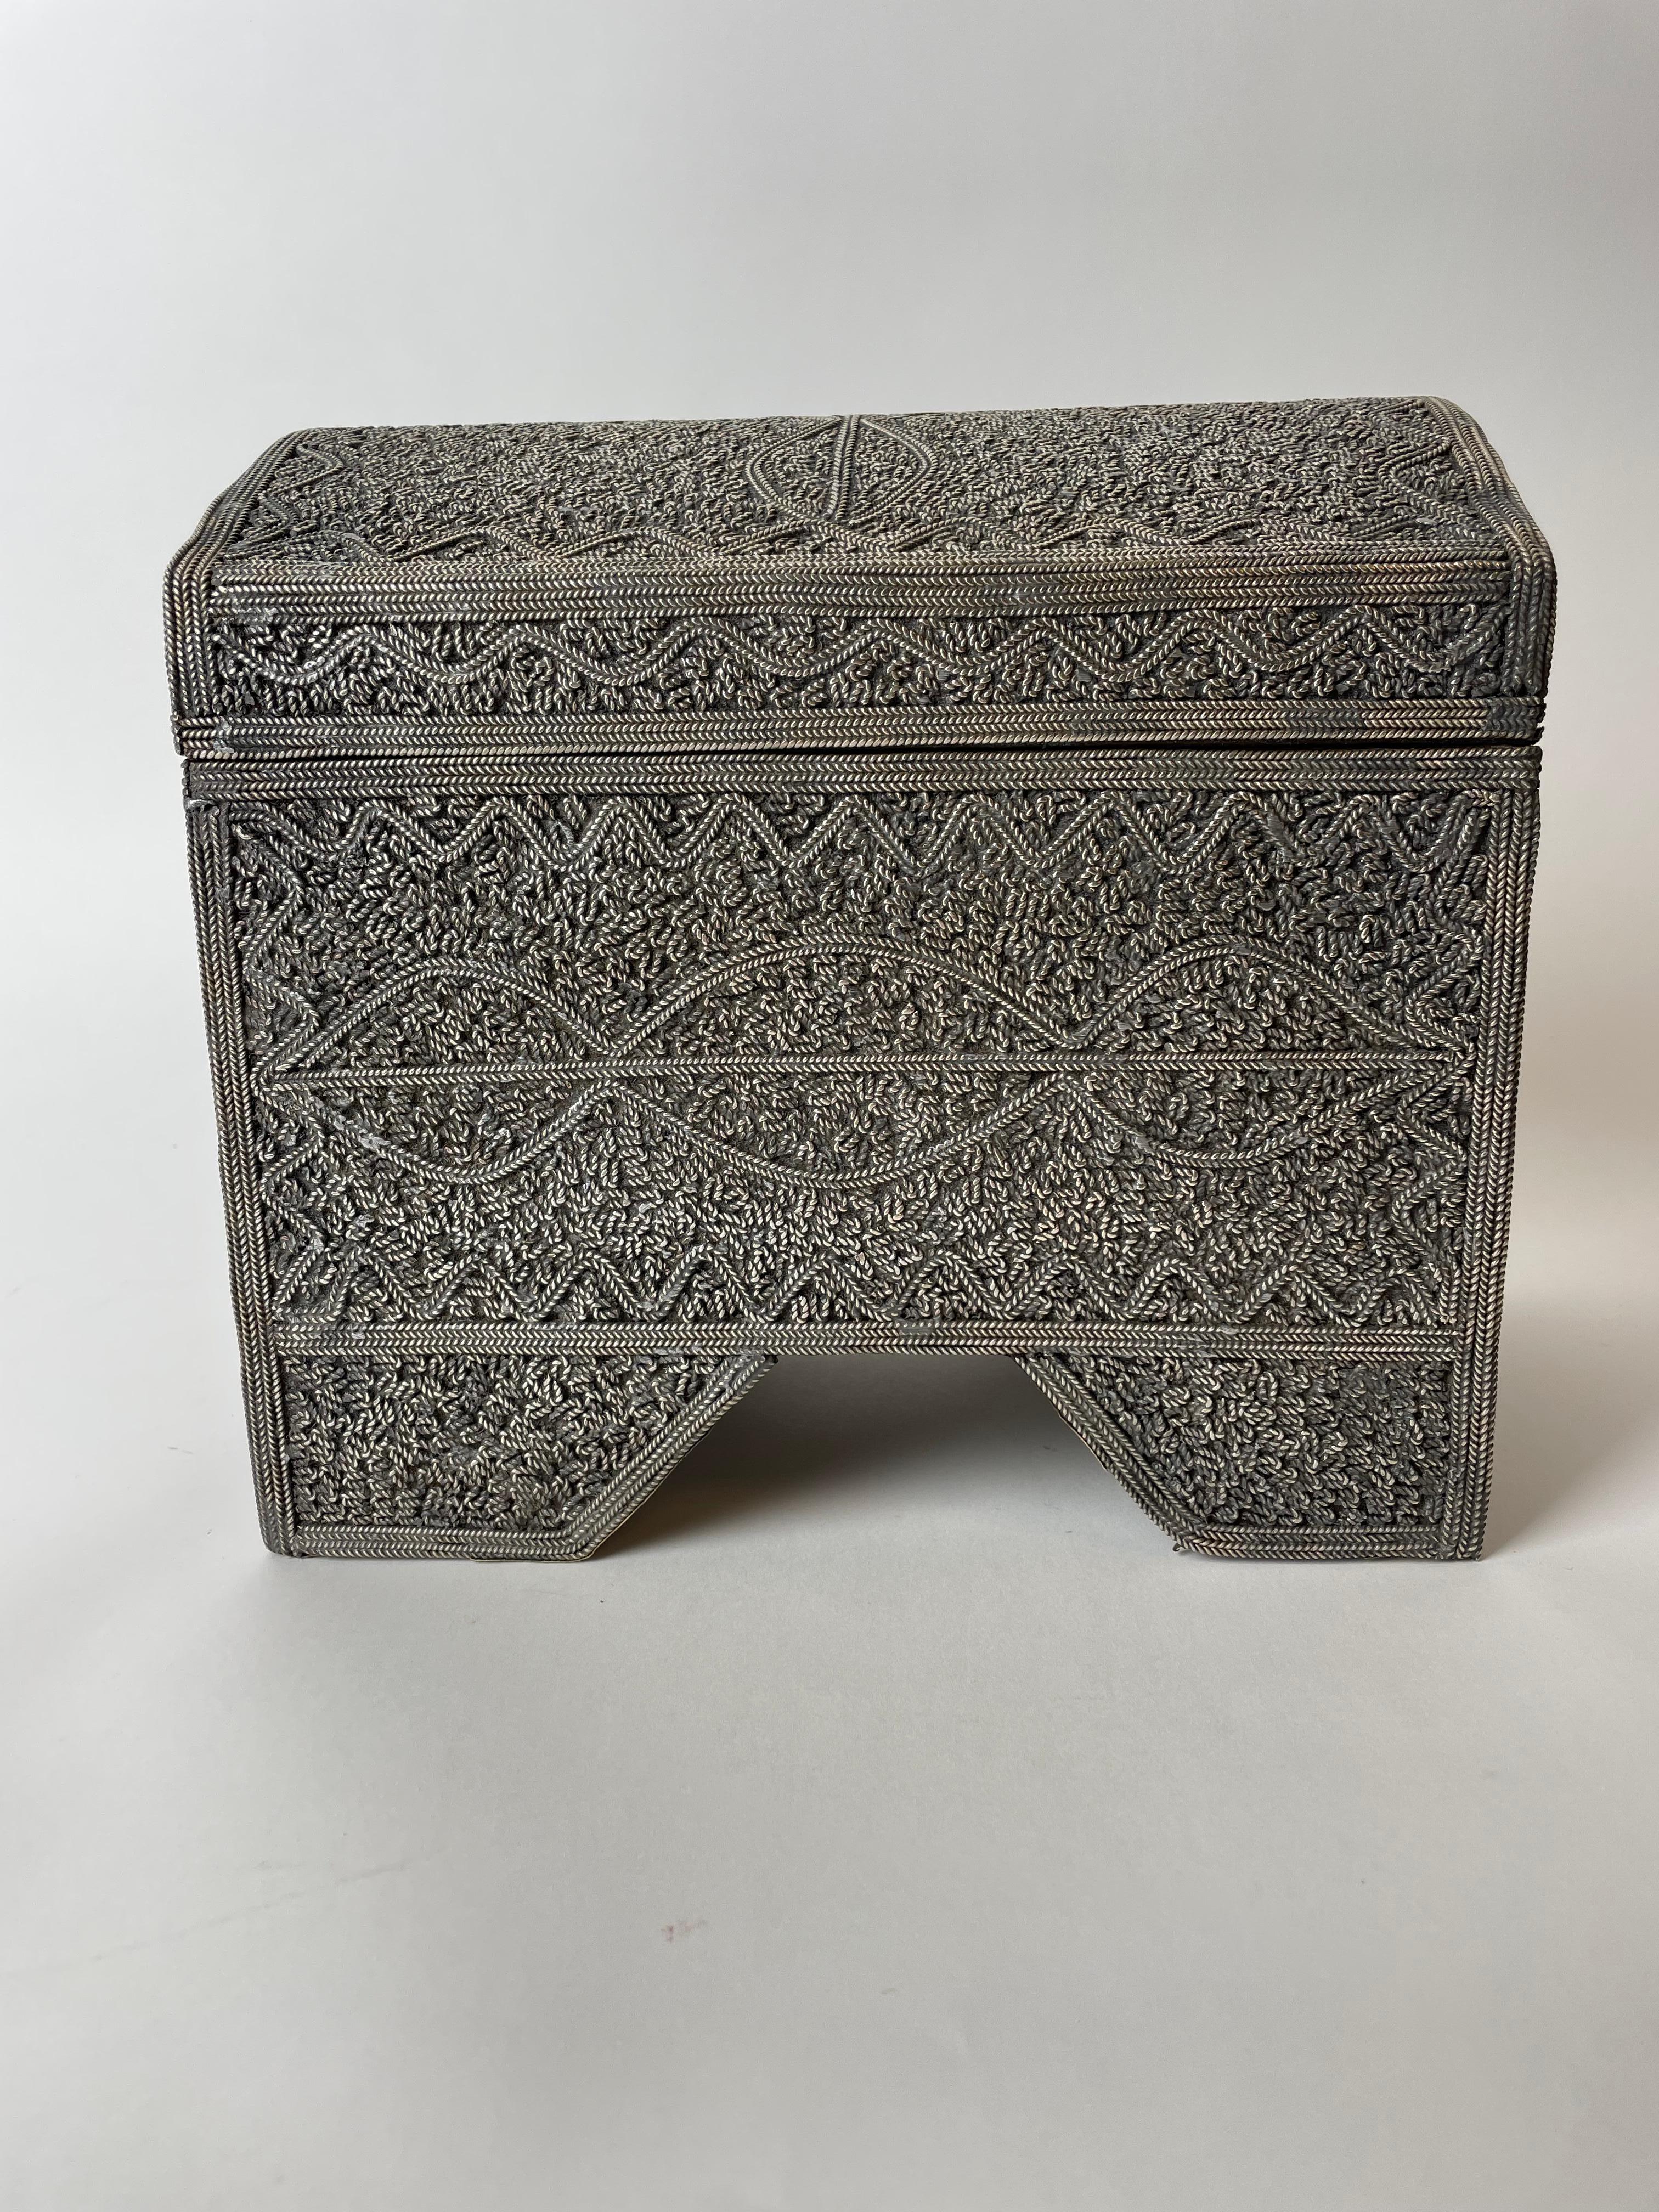 Magnifique boîte nord-africaine richement décorée de fils d'argent, d'une facture très exquise. Probablement fabriqué au Maroc ou en Algérie à la fin du 19e siècle.

Usure conforme à l'âge et à l'utilisation.